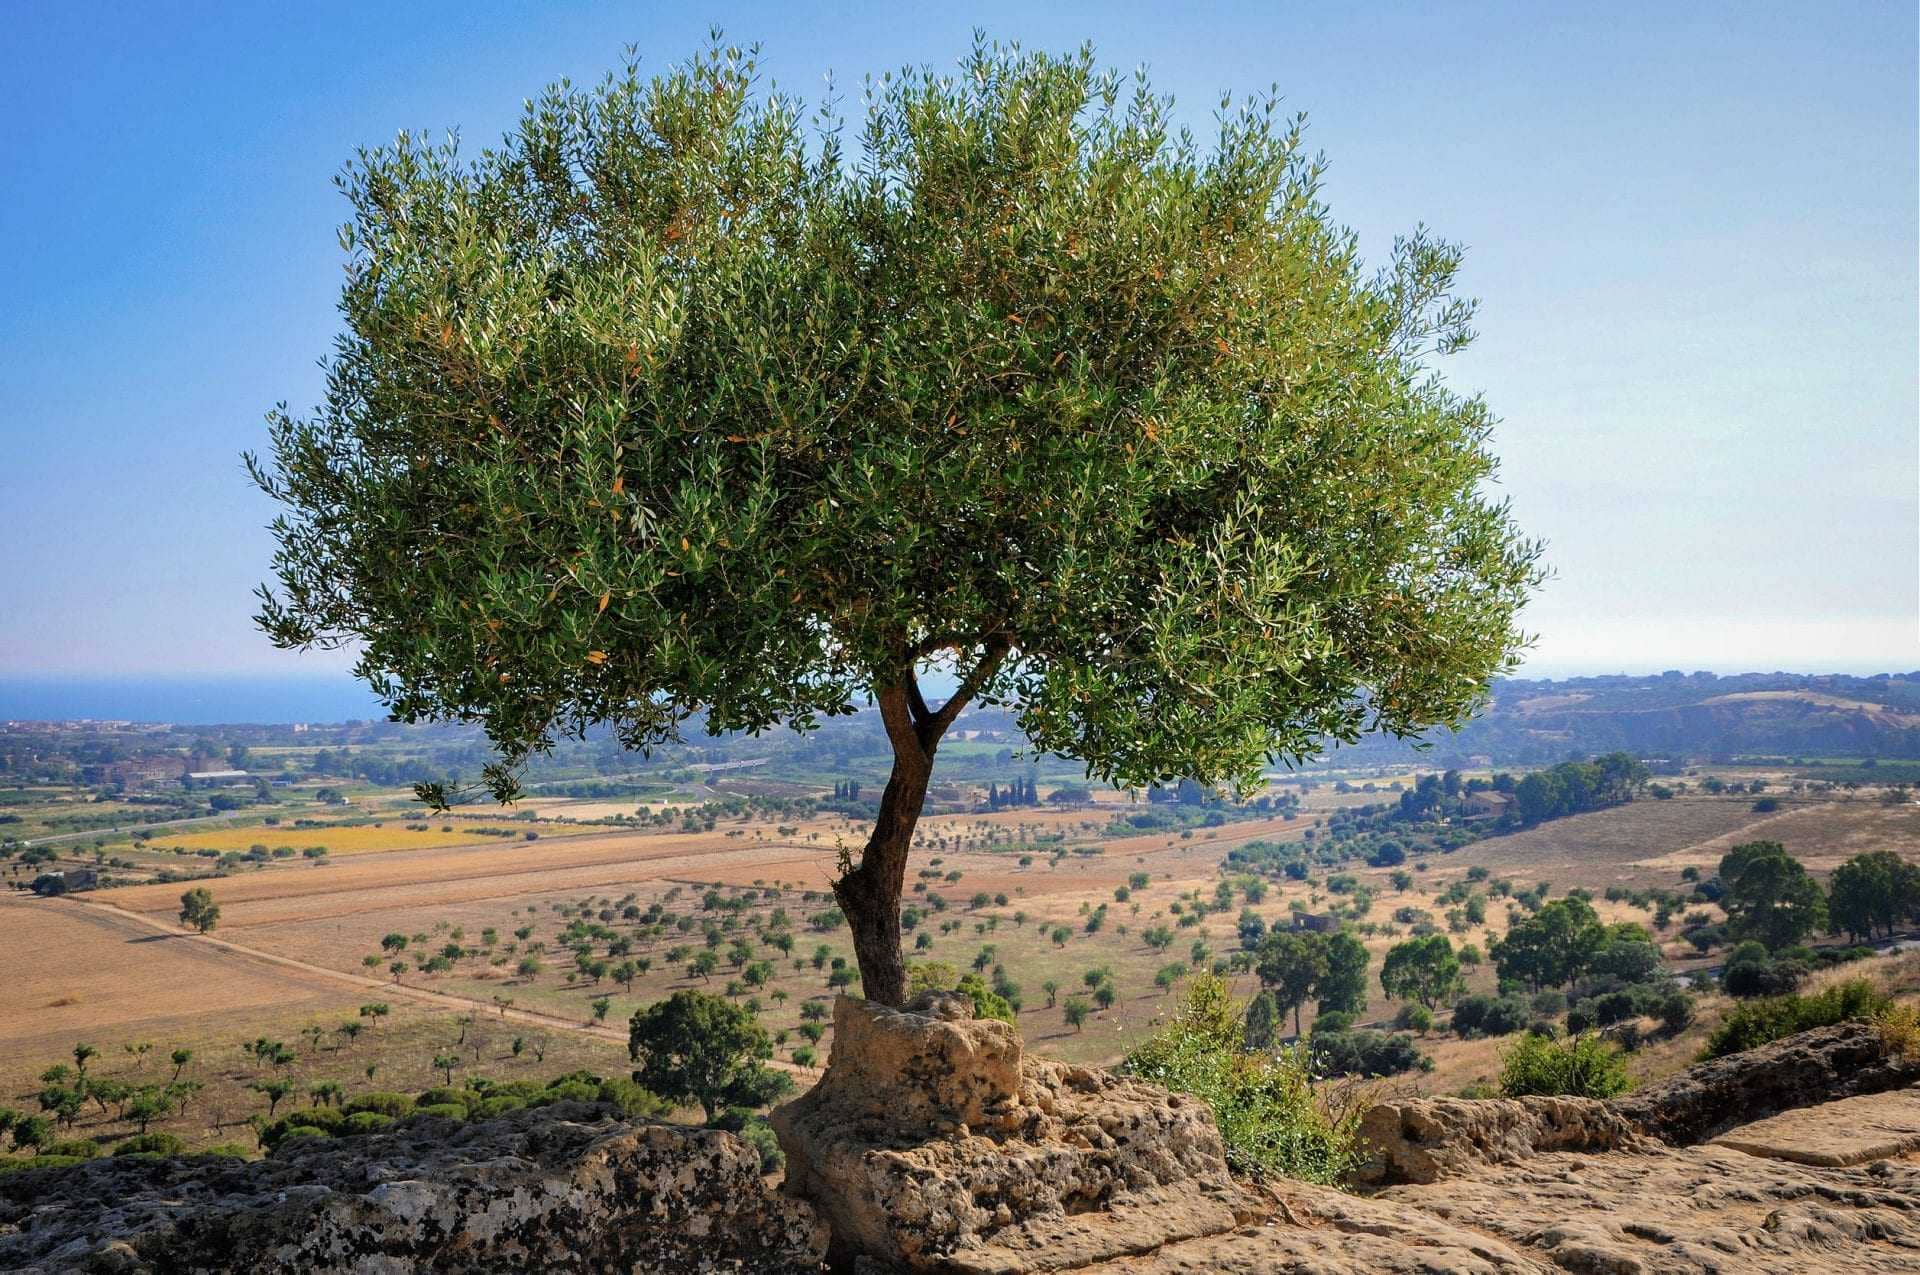 les-défis-de-la-production-mondiale-attendent-les-producteurs-alors que-le-bassin-méditerranéen-devient-plus-chaud-et-plus-sec-l-huile-d-olive-temps